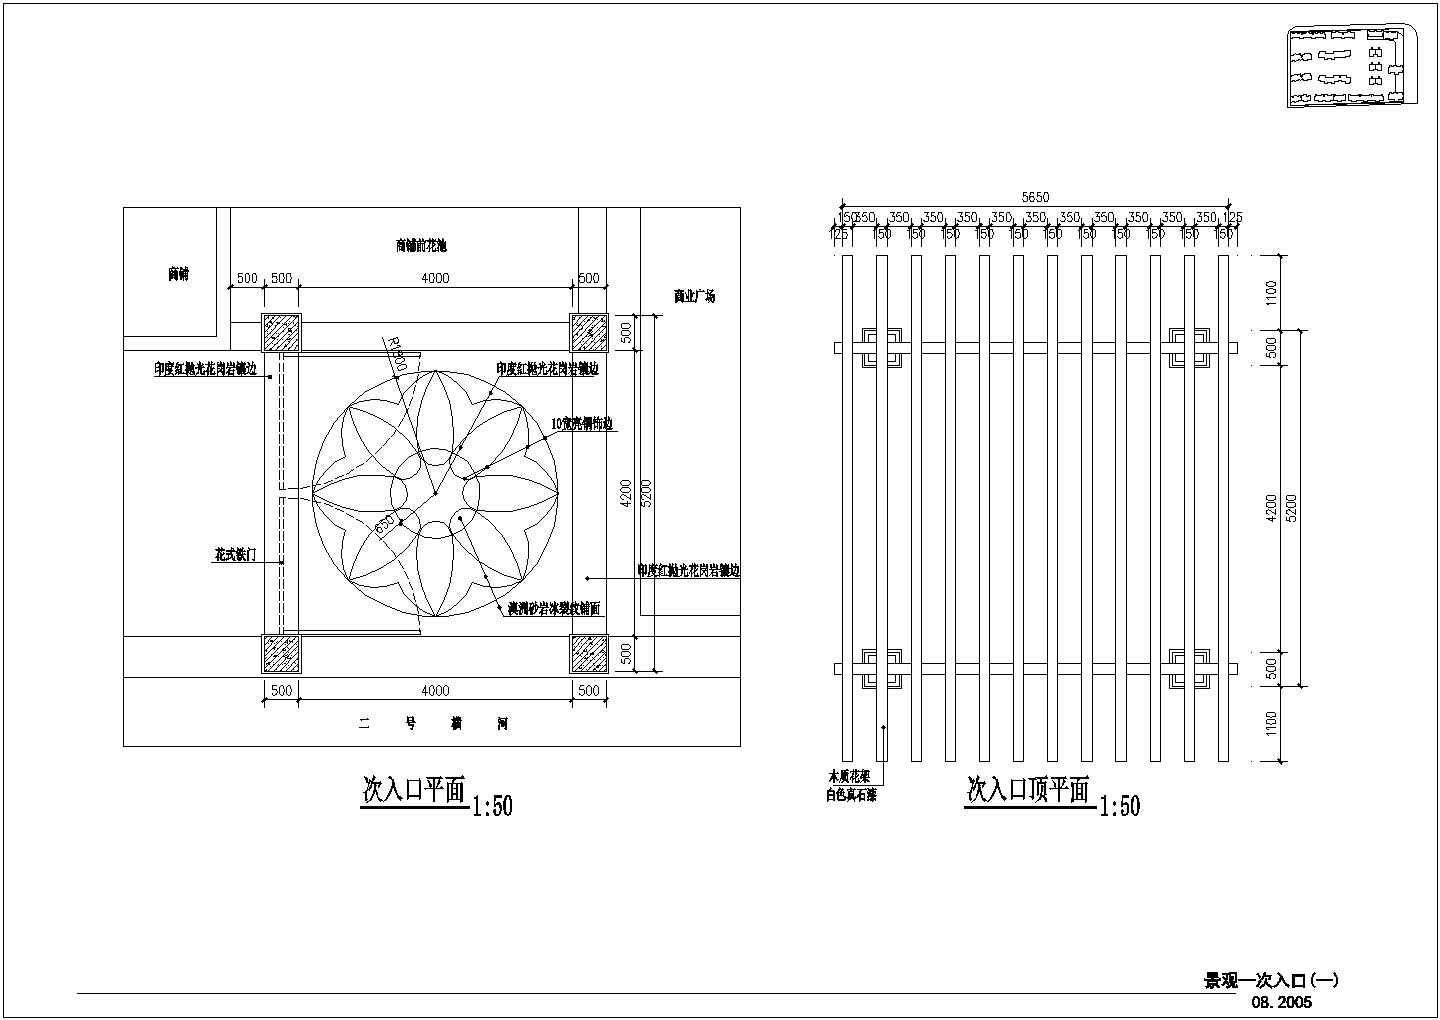 【苏州】某住宅小区景观设计施工图(含中央下沉式广场地面铺设平面图)